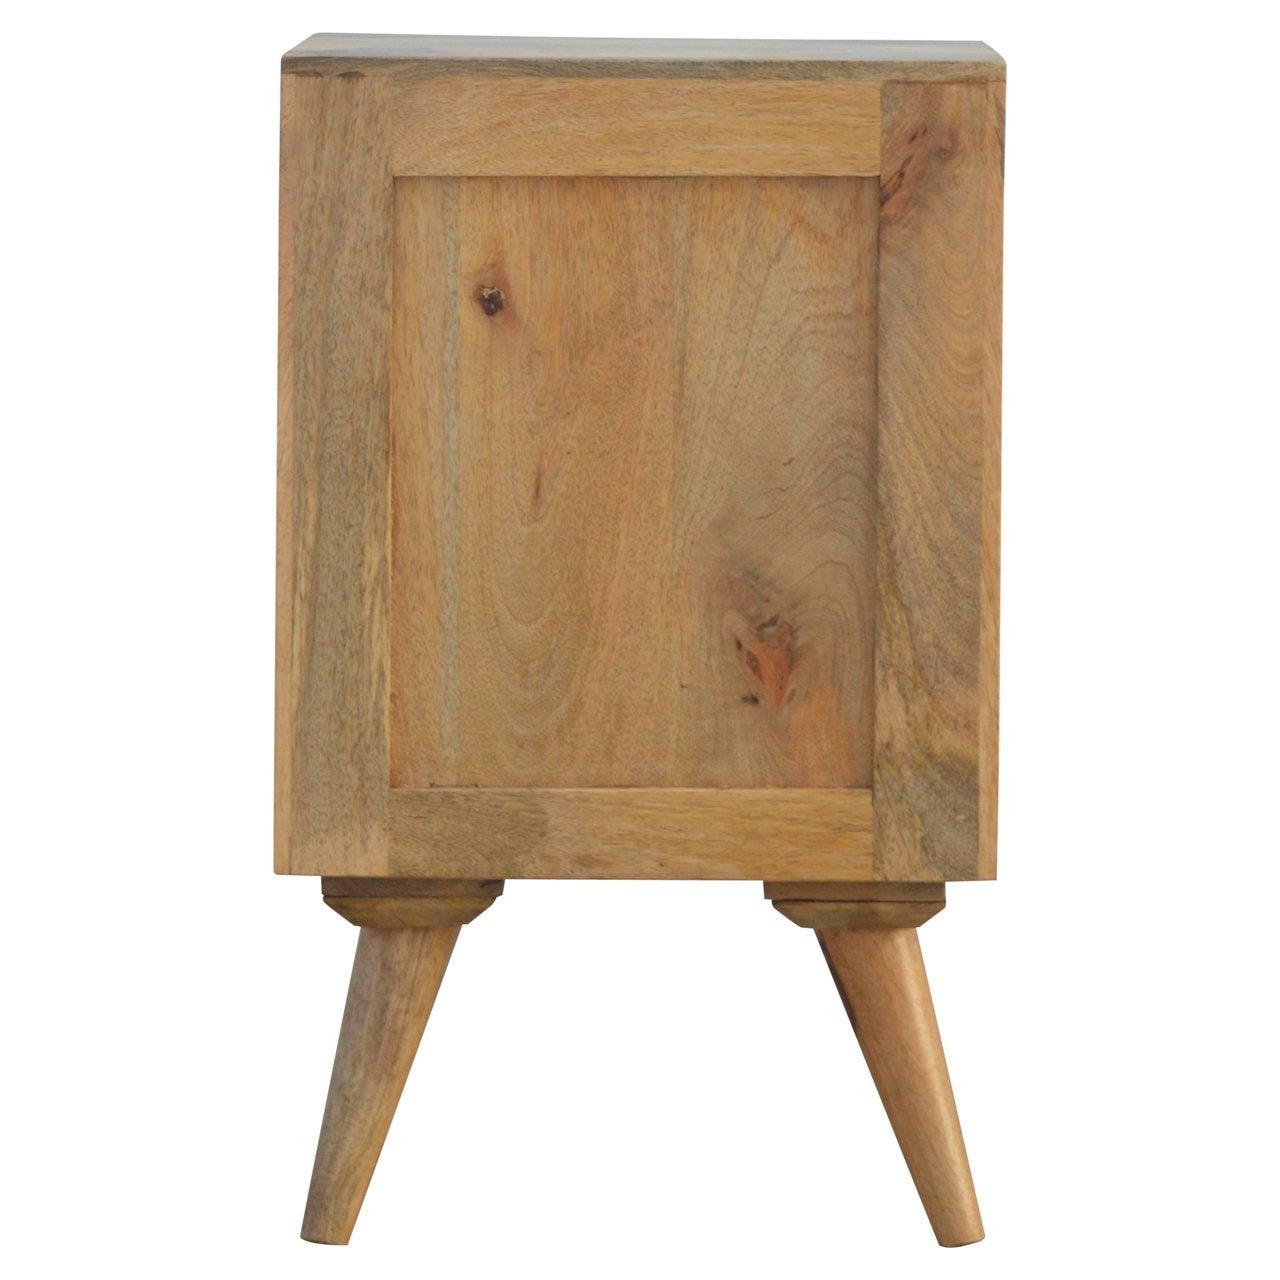 Nordic style 4 drawer multi bedside table - crimblefest furniture - image 10